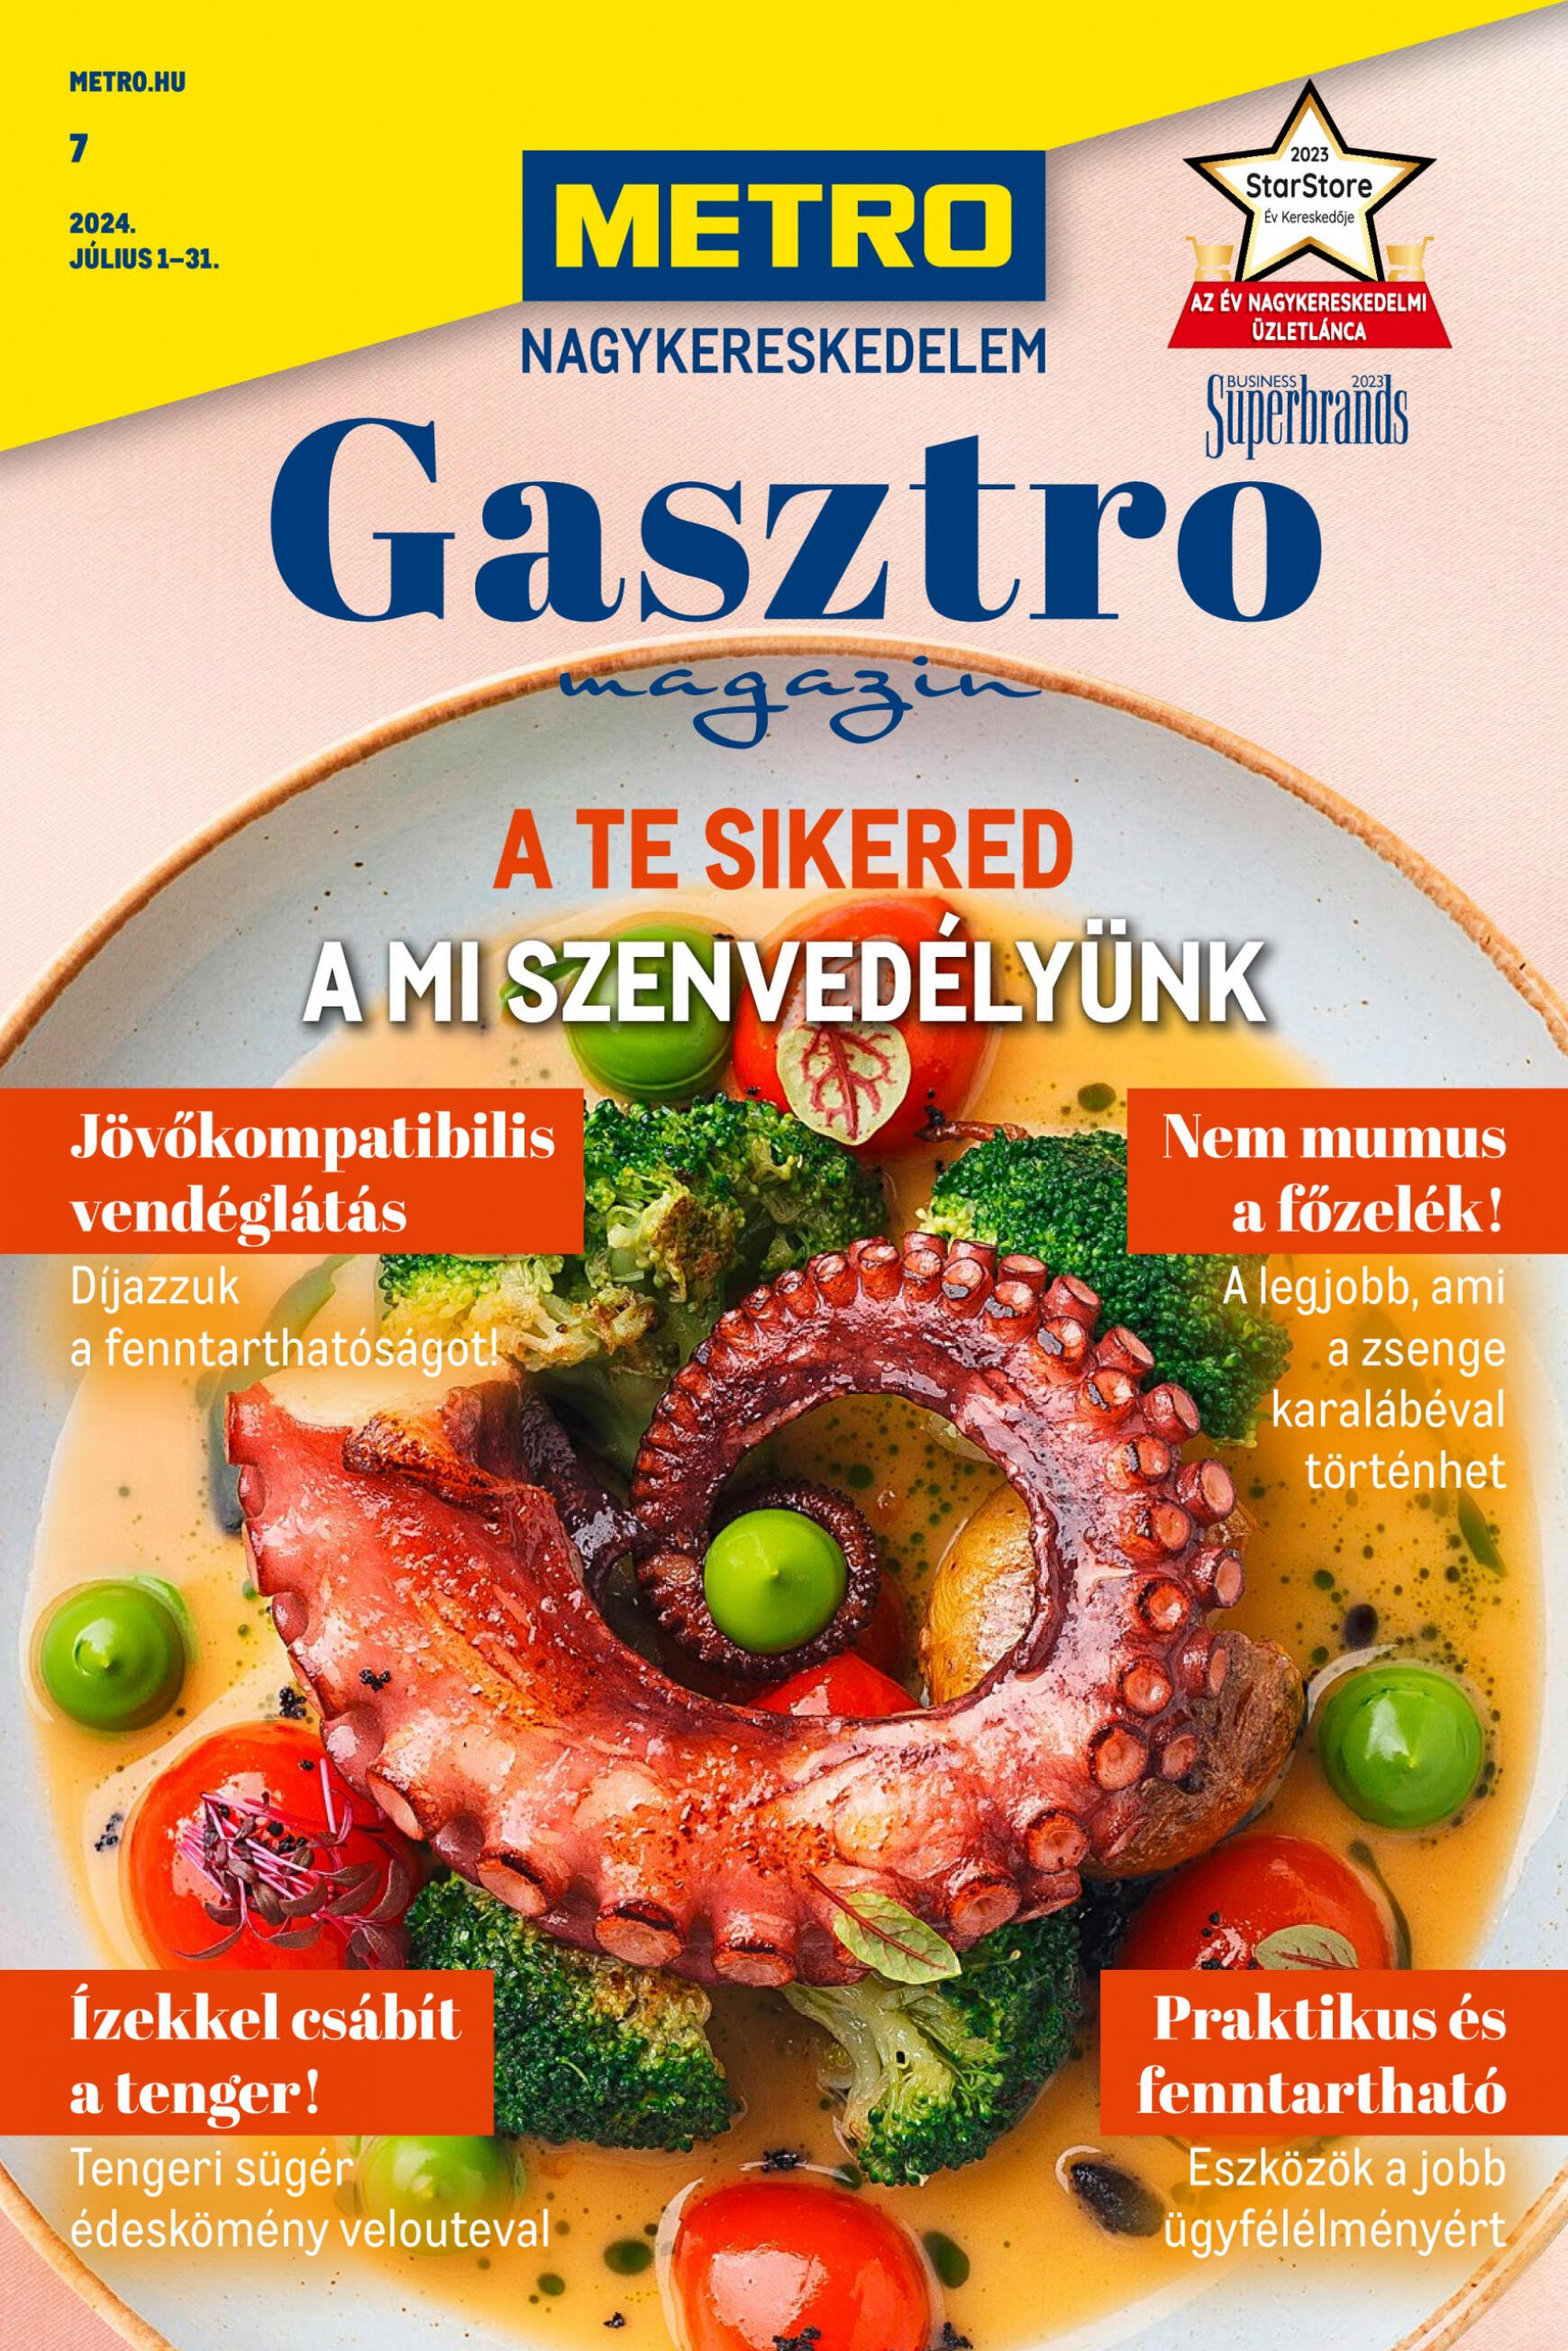 metro - Aktuális újság Metro - Gasztro Magazin 07.01. - 07.31.